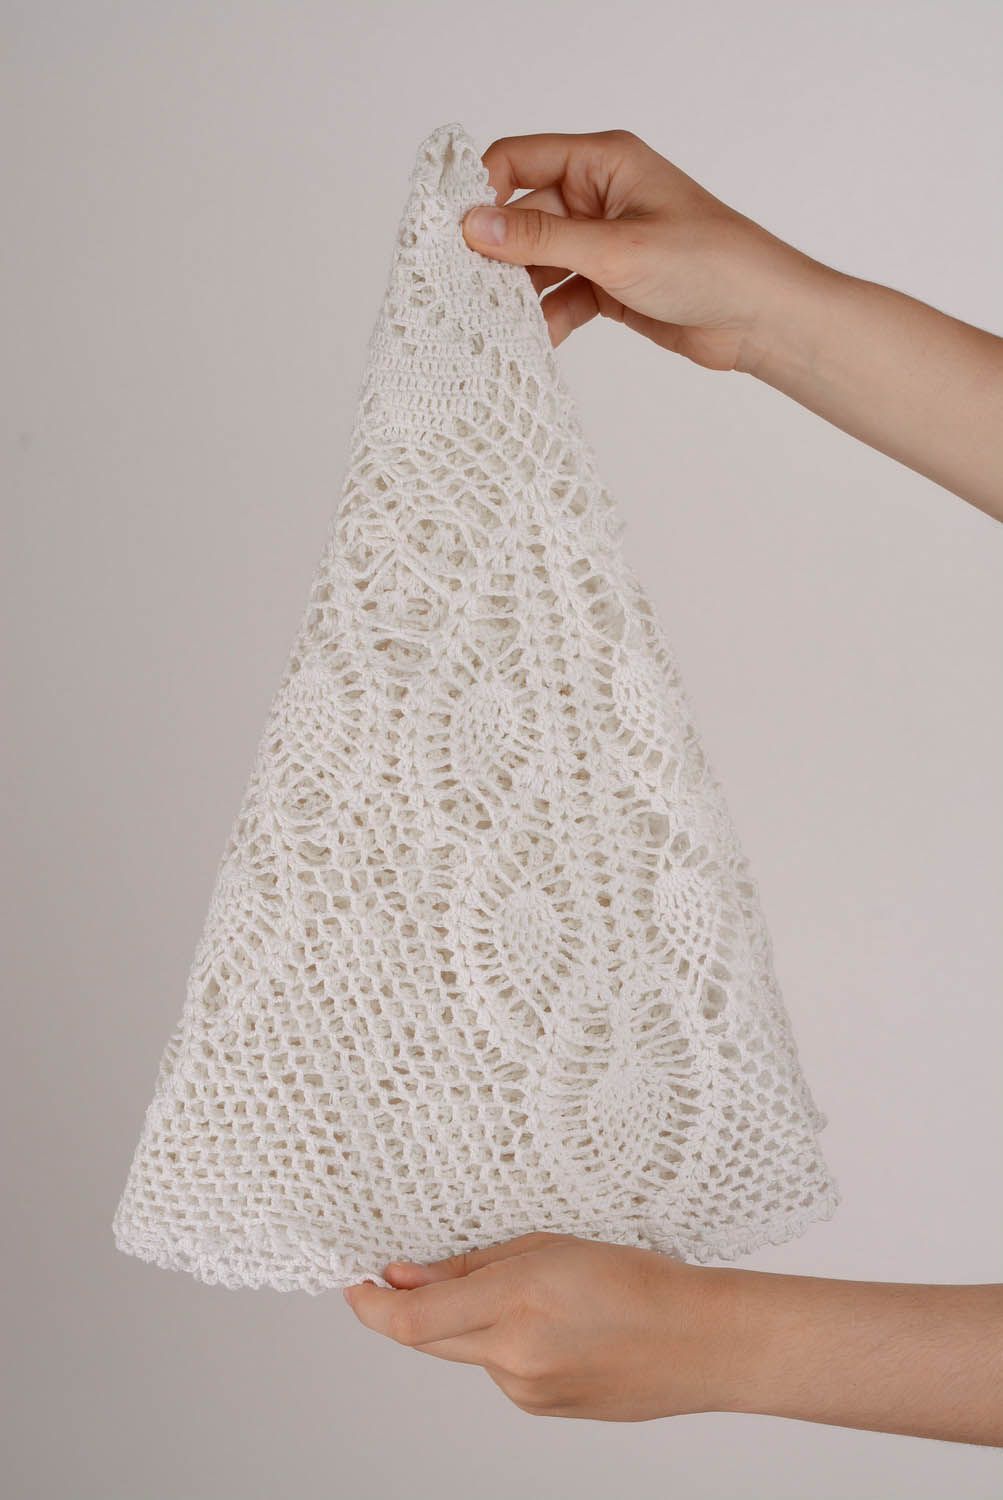 Crocheted napkin photo 1